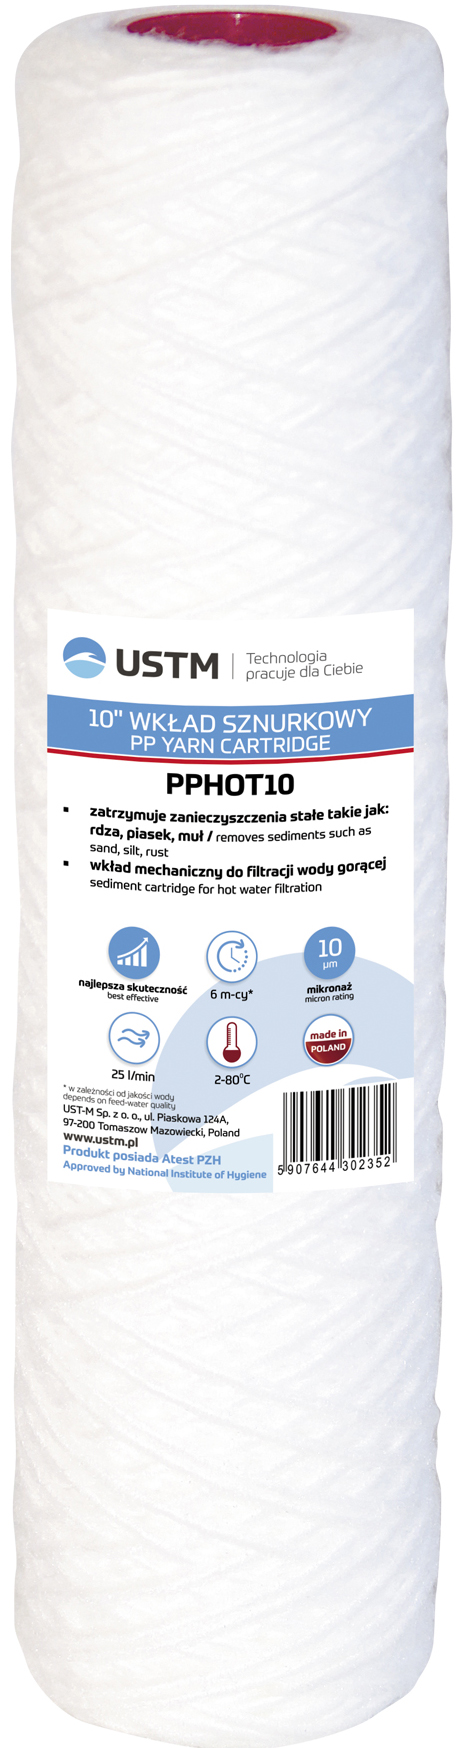 USTM PP-HOT10